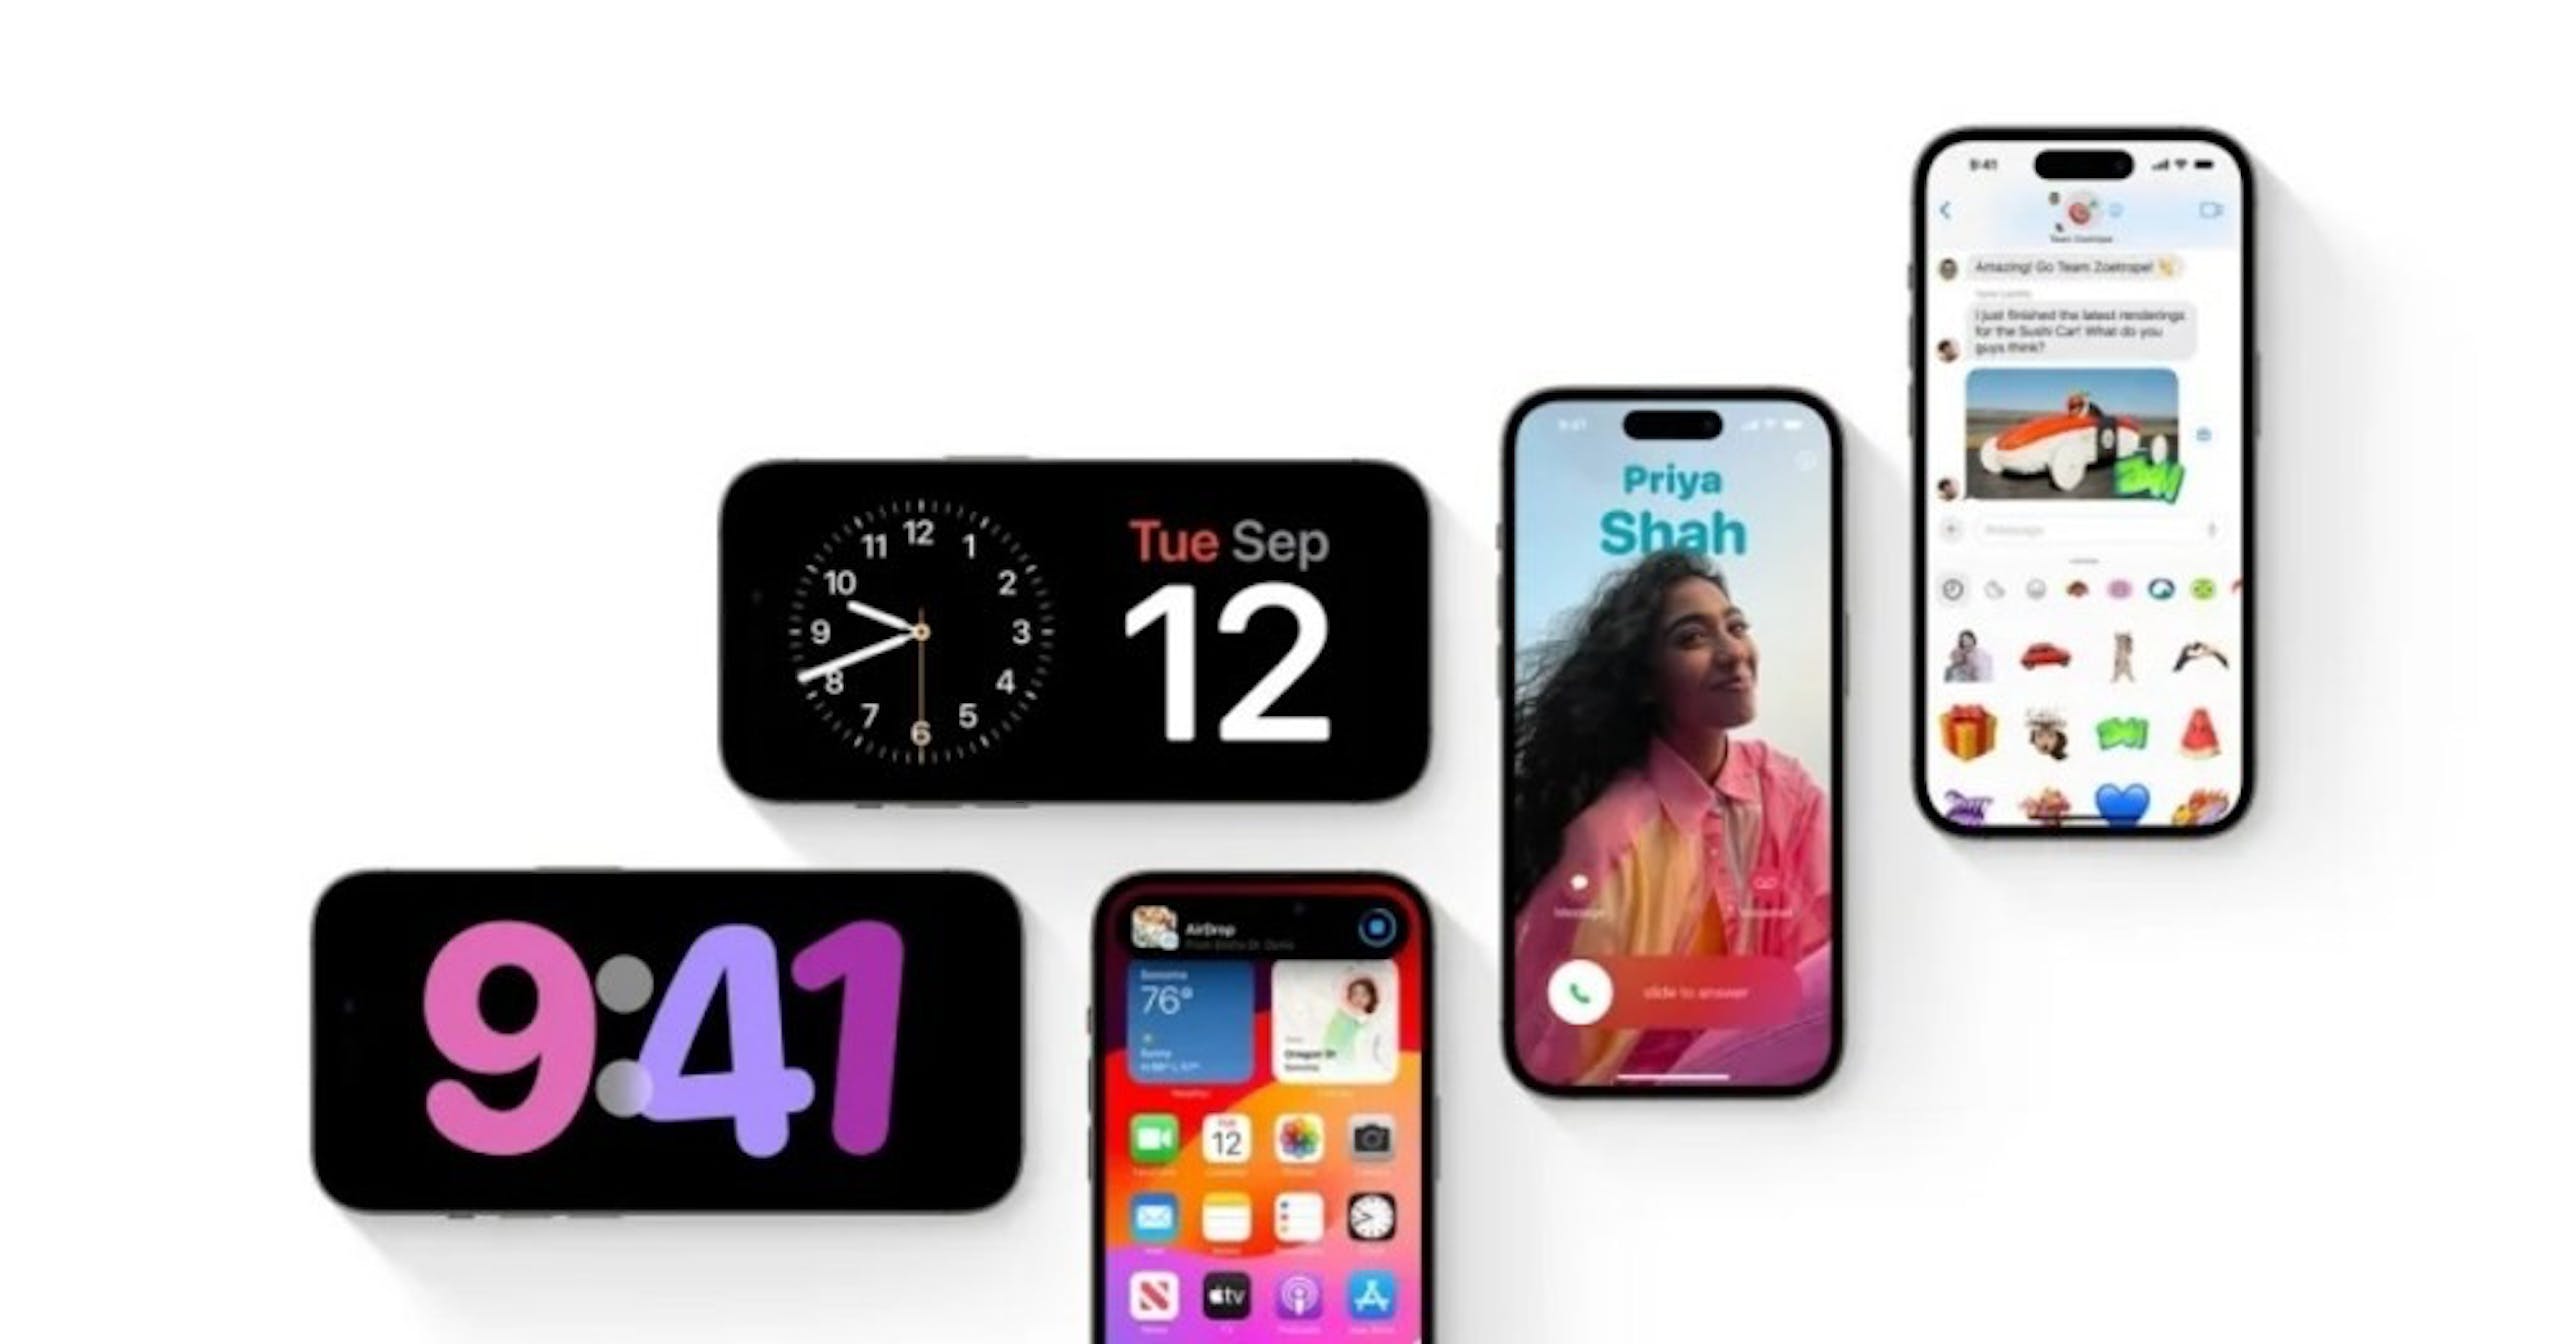 照片中提到了9:41、Tue Sep、12，包含了蘋果17、iPhone SE、IOS 17、蘋果、蘋果